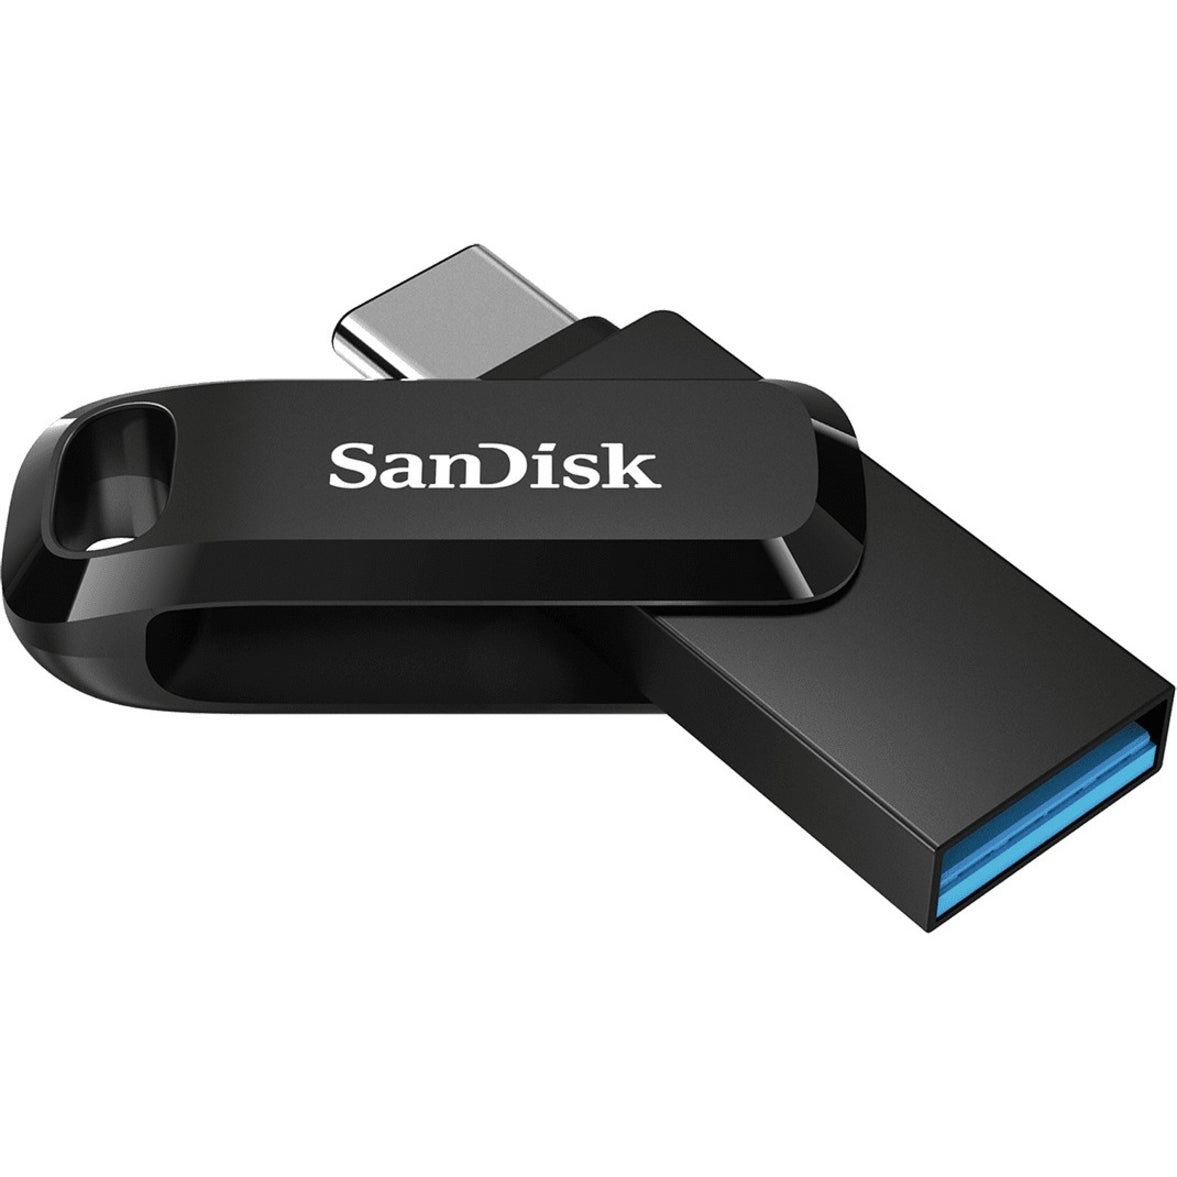 SanDisk SDDDC3-032G-A46 Ultra Dual Drive Go USB Typ-C 32GB Schnelle Übertragungsgeschwindigkeiten Einfaches Datei-Backup